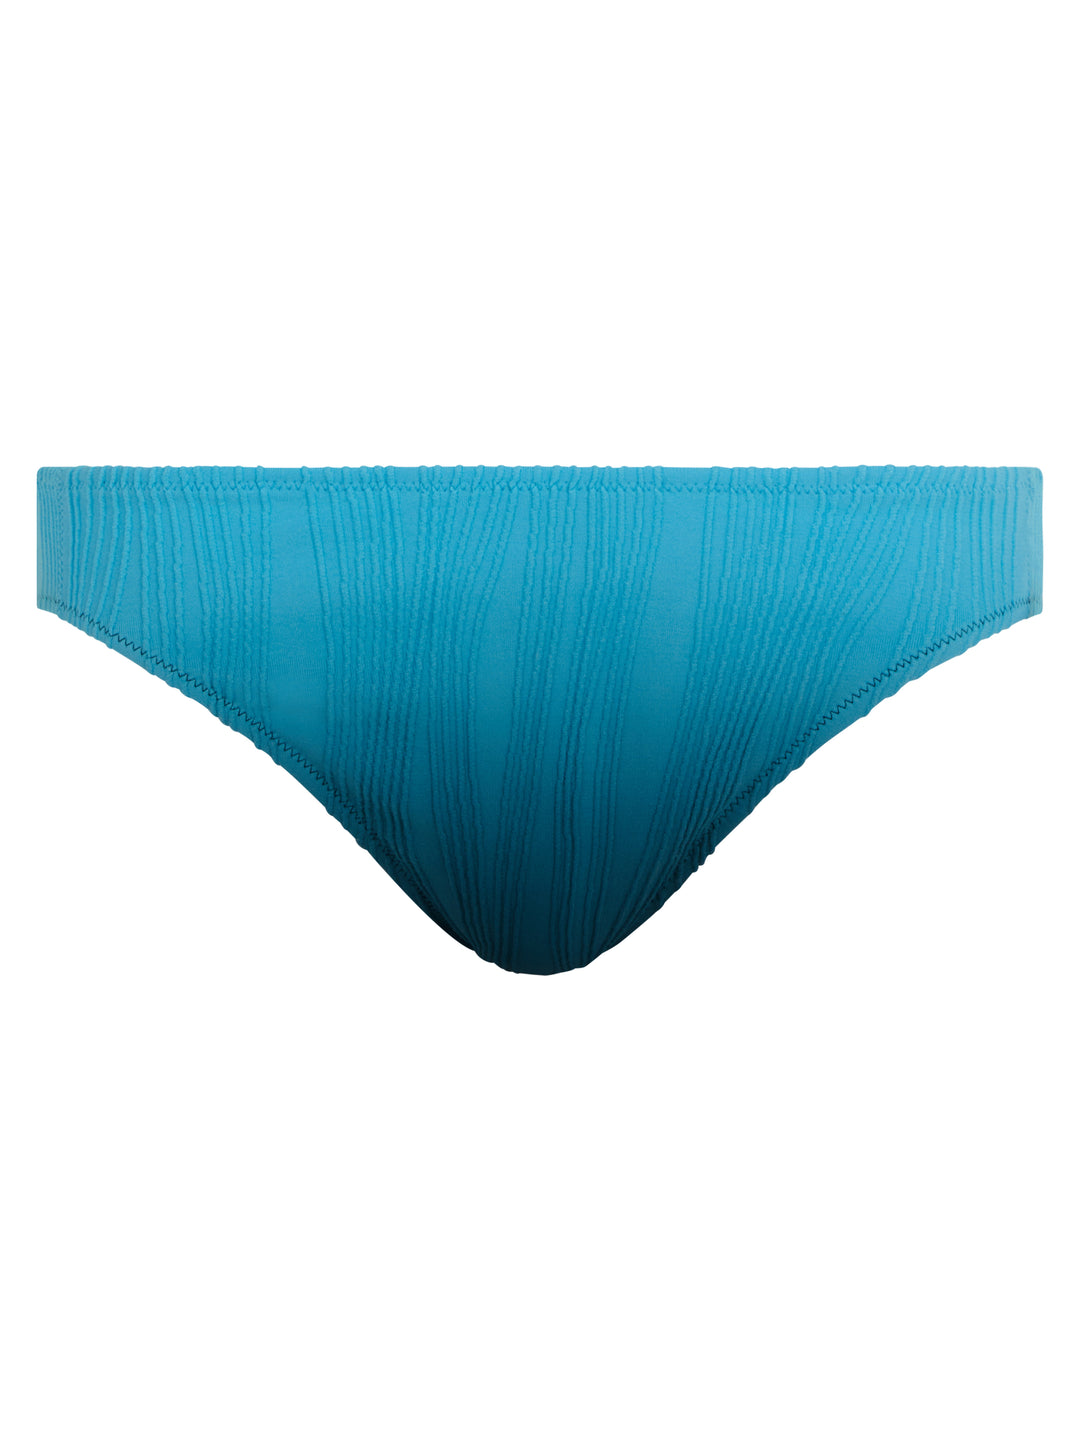 Chantelle 泳衣 - 均碼游泳三角褲 藍色領帶與染色